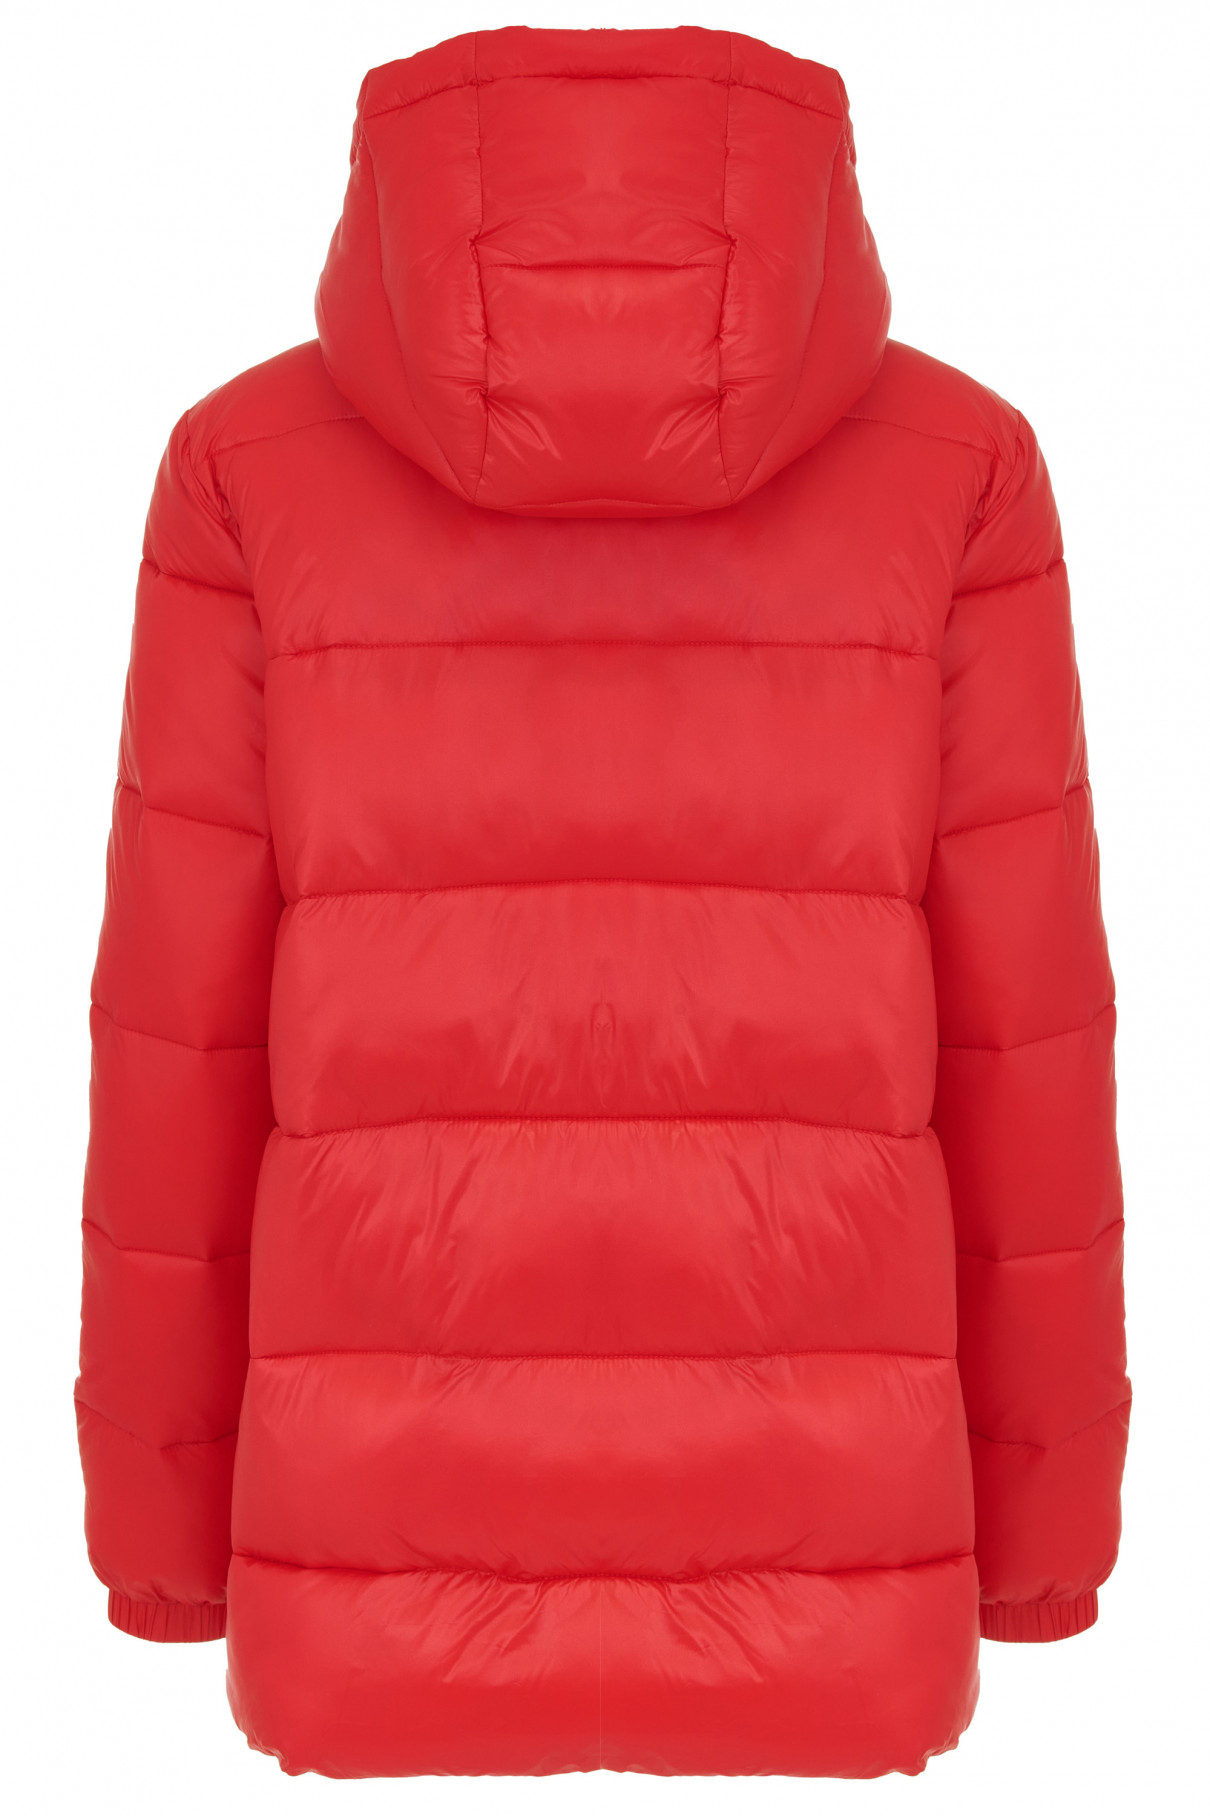 Куртка утепленная Meknes , Красный, арт. FR24SS1DJ40PCW600RD купить в интернет-магазине